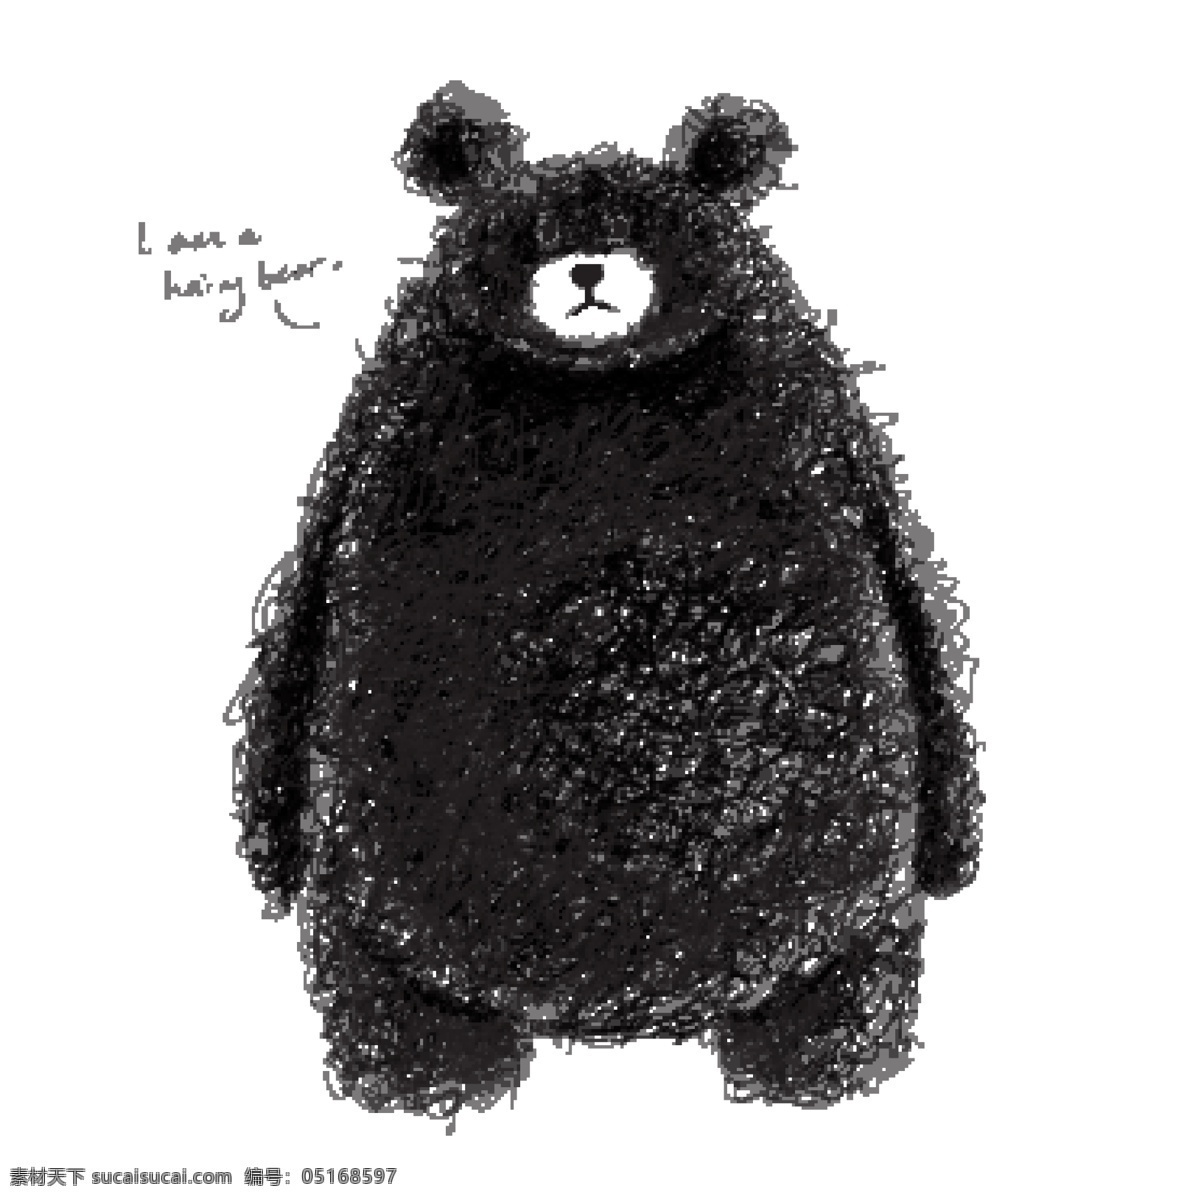 可爱手绘棕熊 可爱 手绘 棕熊 熊 黑白 铅笔画 素描 速写 动漫动画 动漫人物